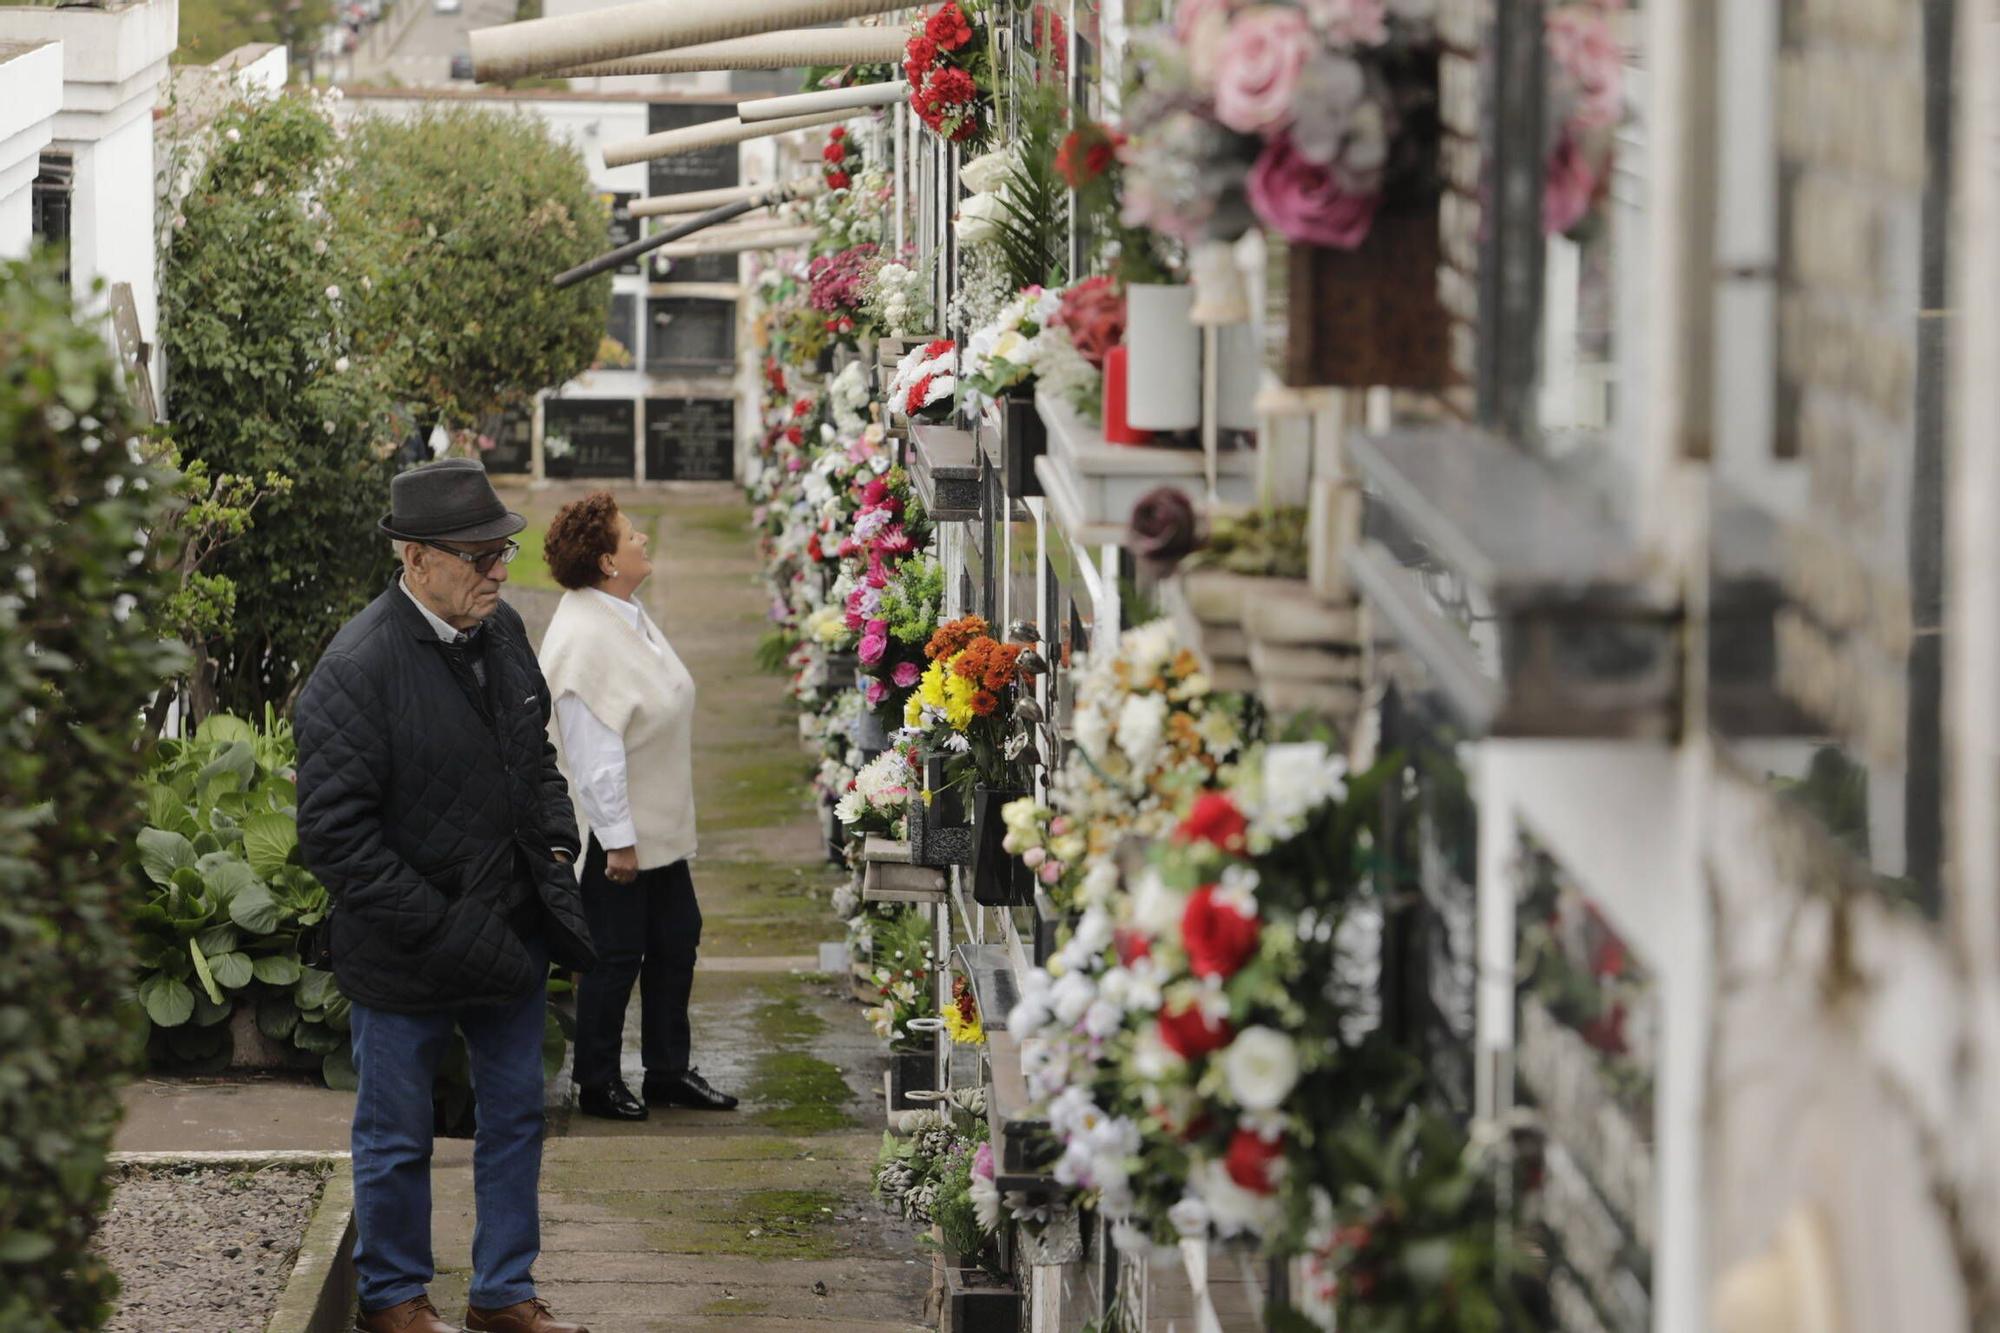 Los cementerios de Gijón reciben multitud de visitas por el Día de Todos los Santos